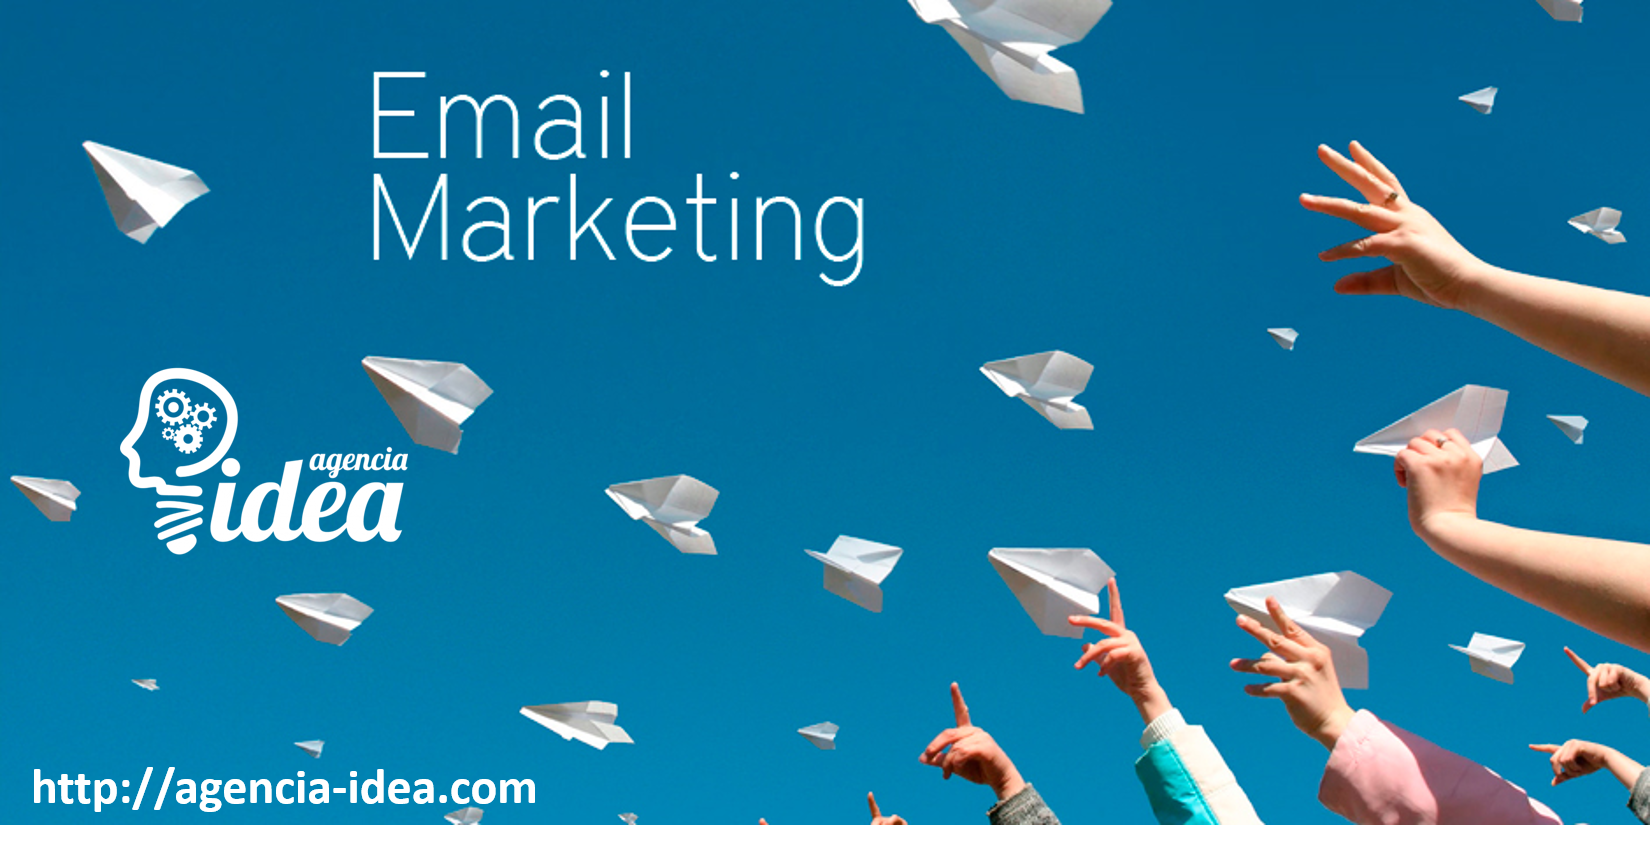 Las herramientas y funcionalidades ms importantes en email marketing. | Agencia Mar